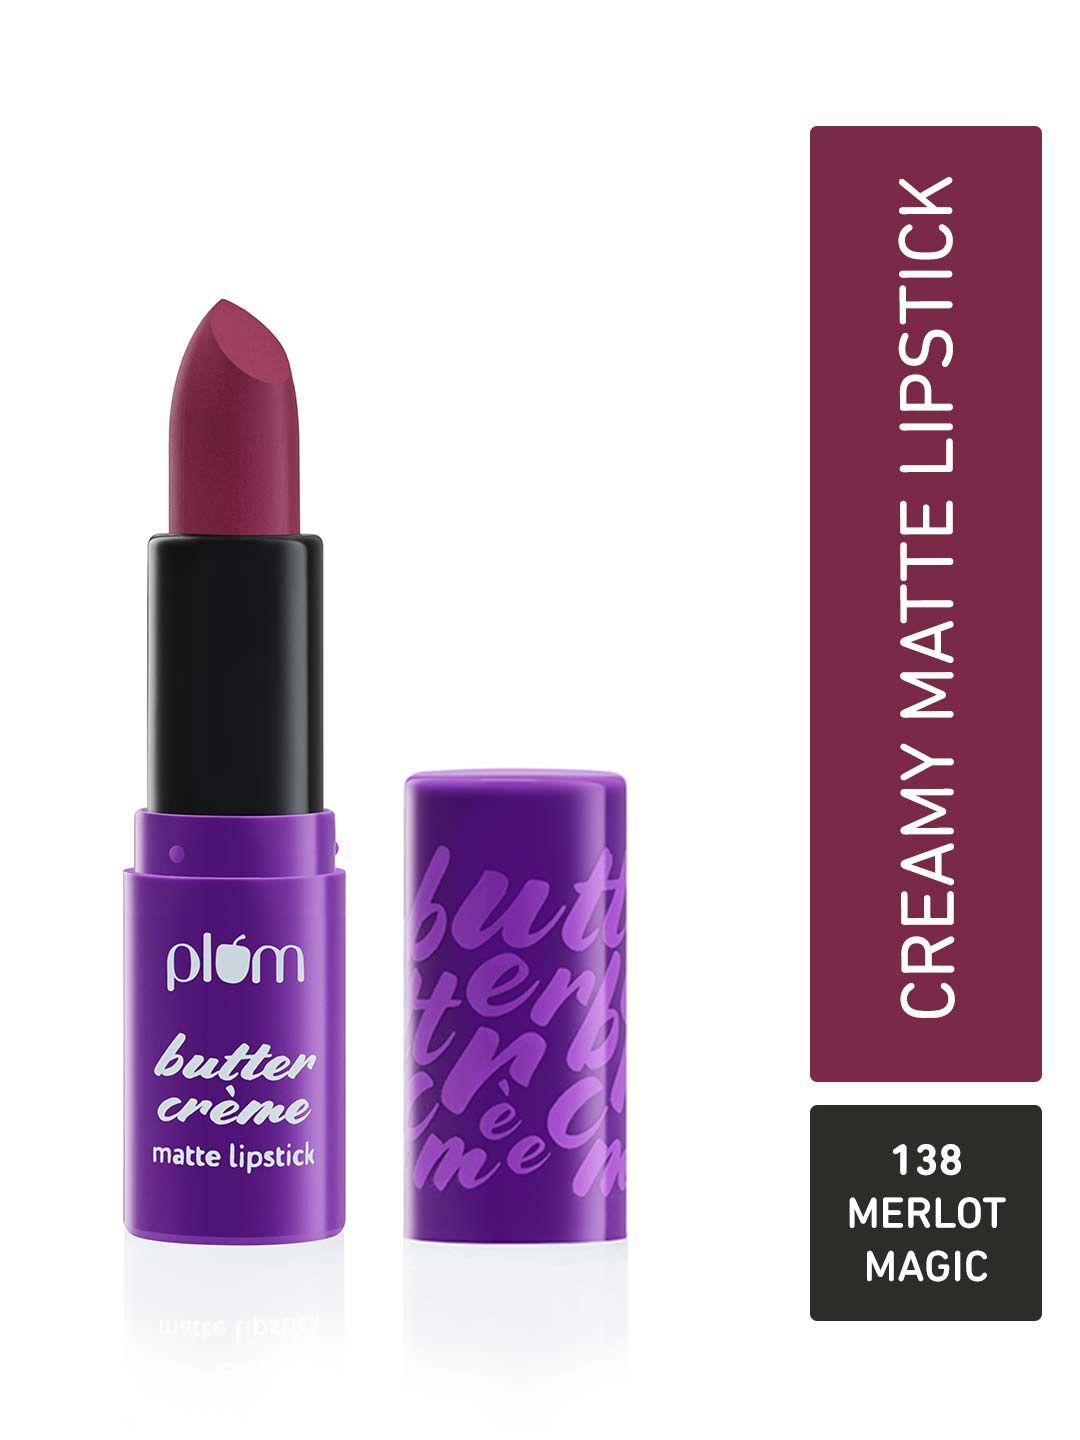 plum butter creme highly pigmented lightweight matte lipstick - merlot magic 138